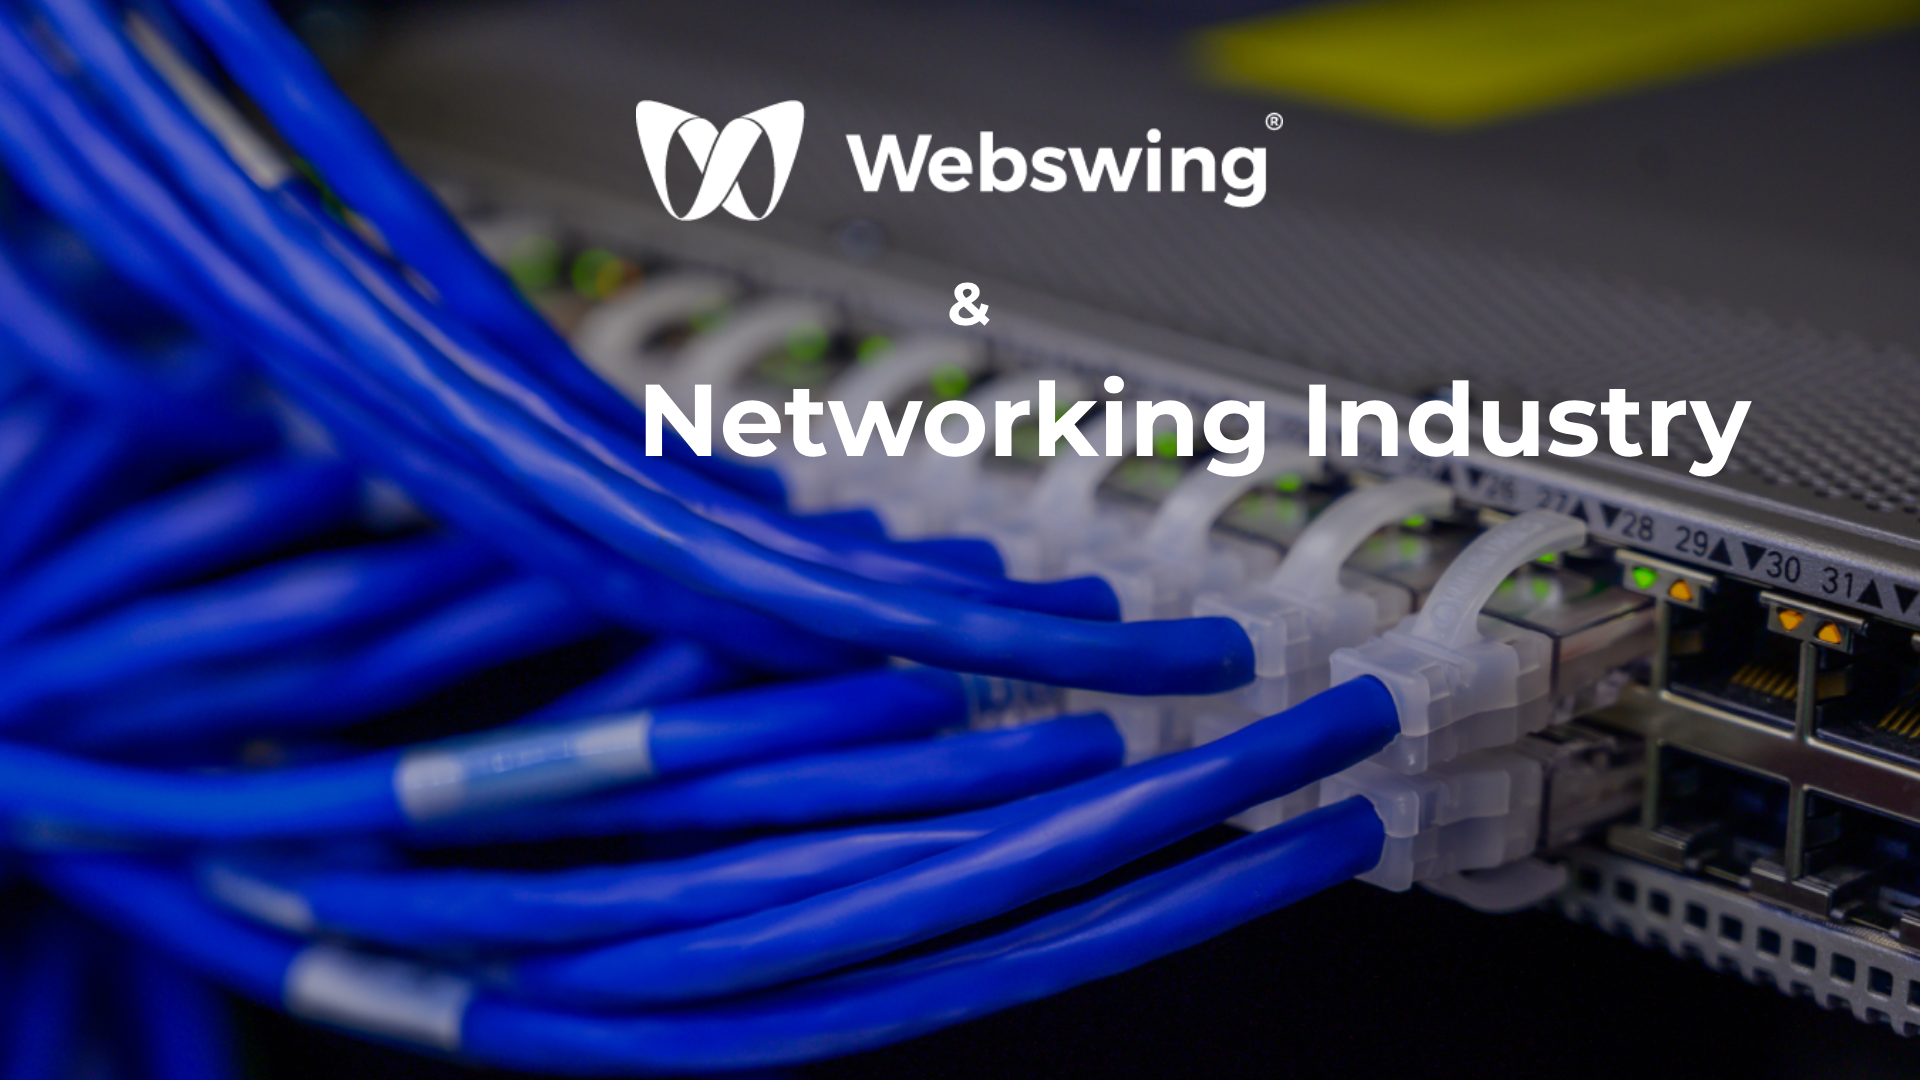 Das Netzwerk von Webswing für Networking-Unternehmen